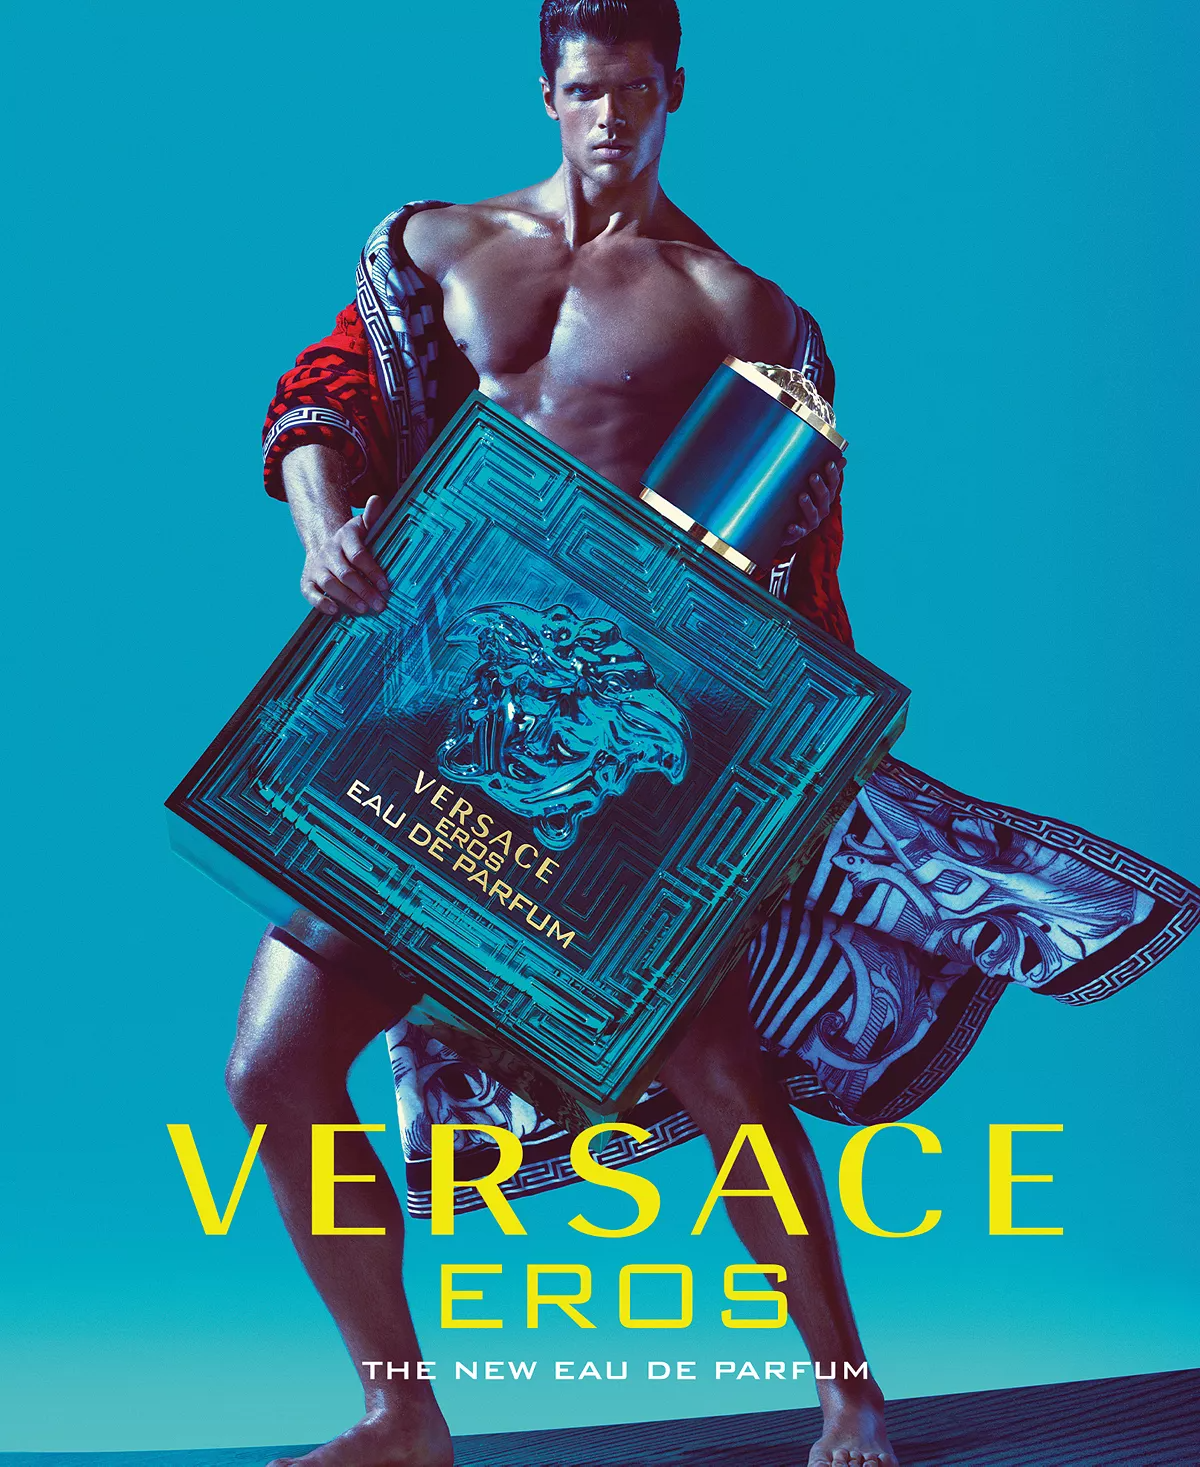 Versace Eros Eau de Parfum, Cologne for Men, 6.7 oz - image 5 of 6